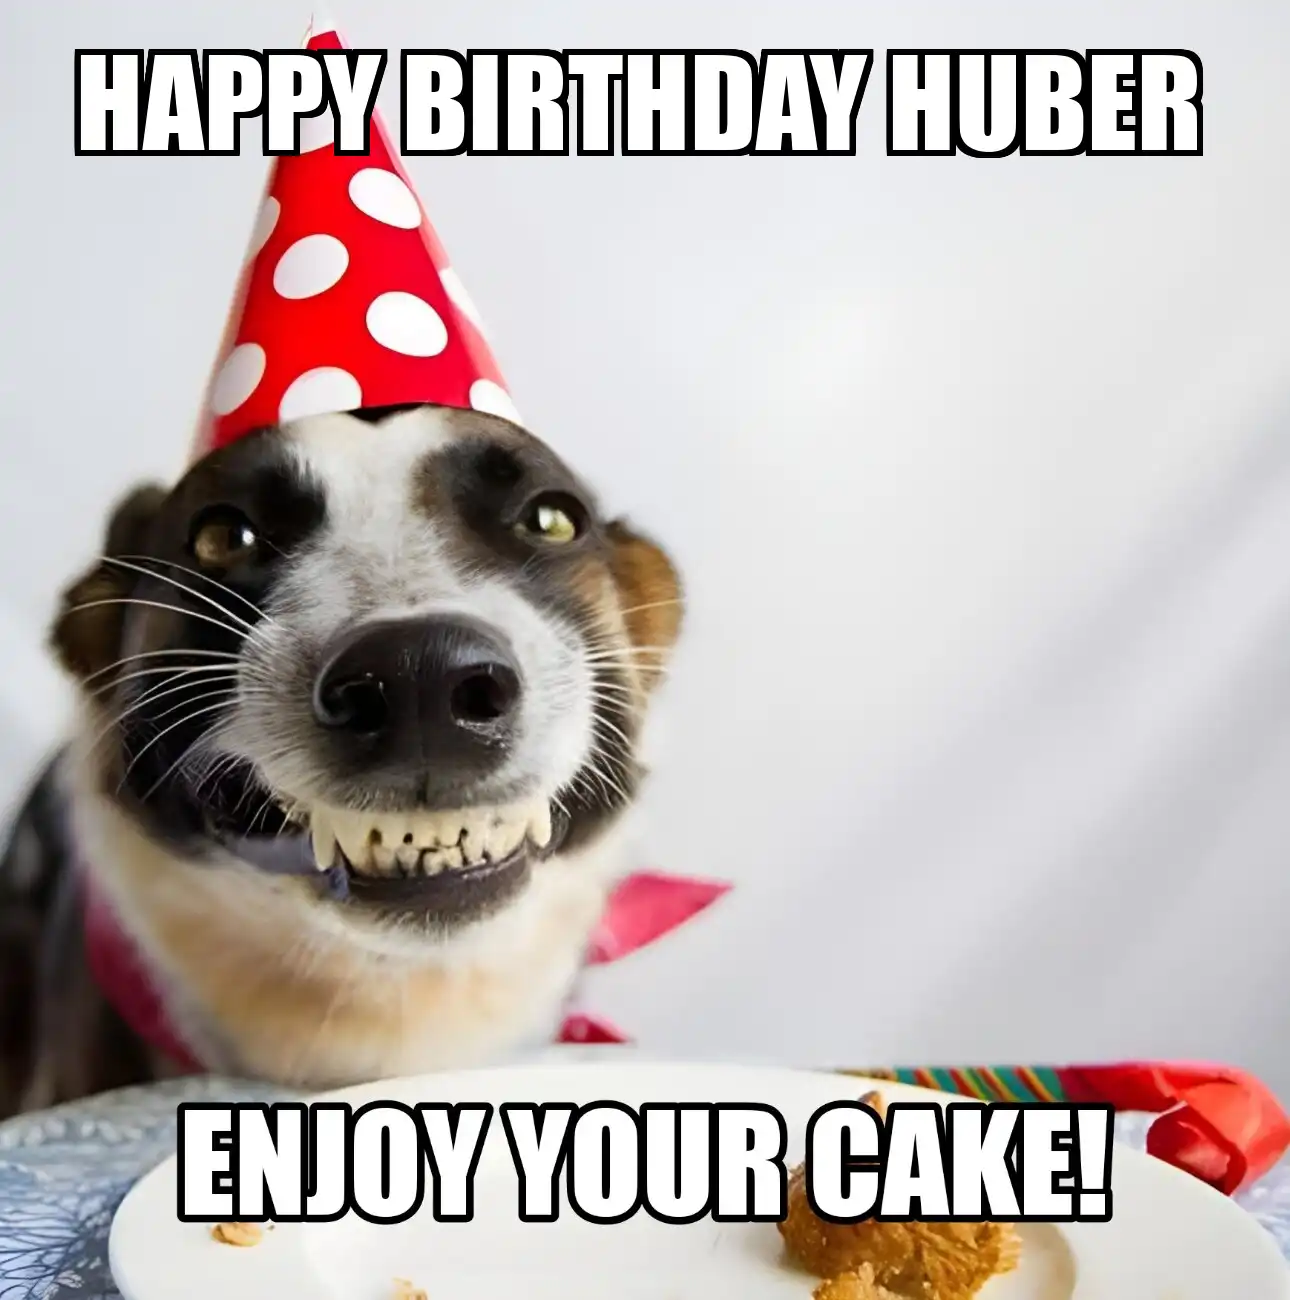 Happy Birthday Huber Enjoy Your Cake Dog Meme